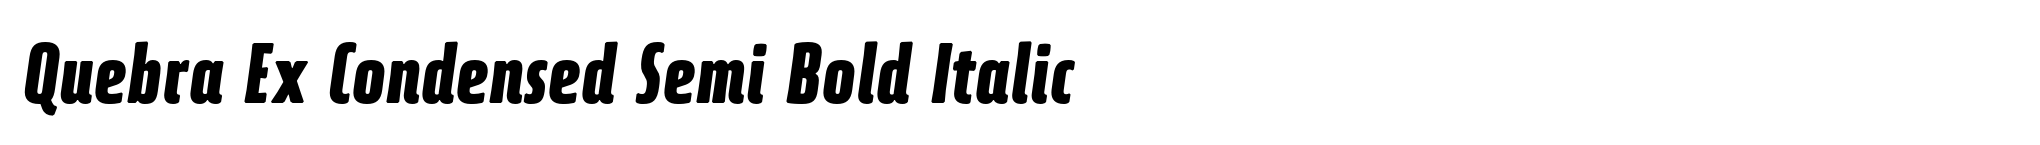 Quebra Ex Condensed Semi Bold Italic image